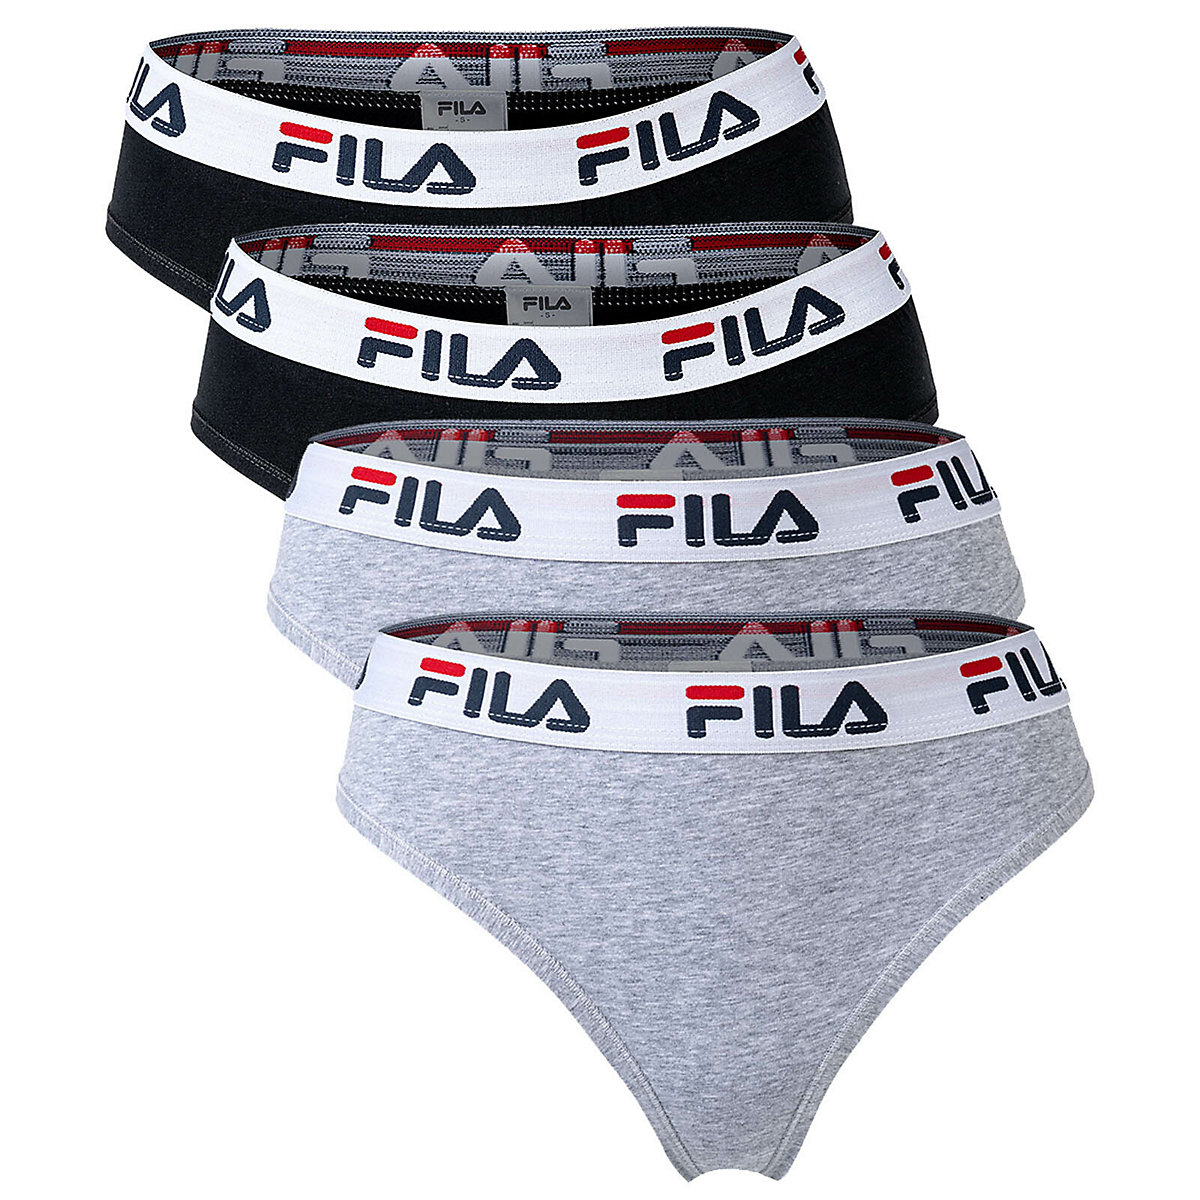 FILA Damen Slip 4er Pack Briefs Logo-Bund Cotton Stretch einfarbig Slips schwarz/grau